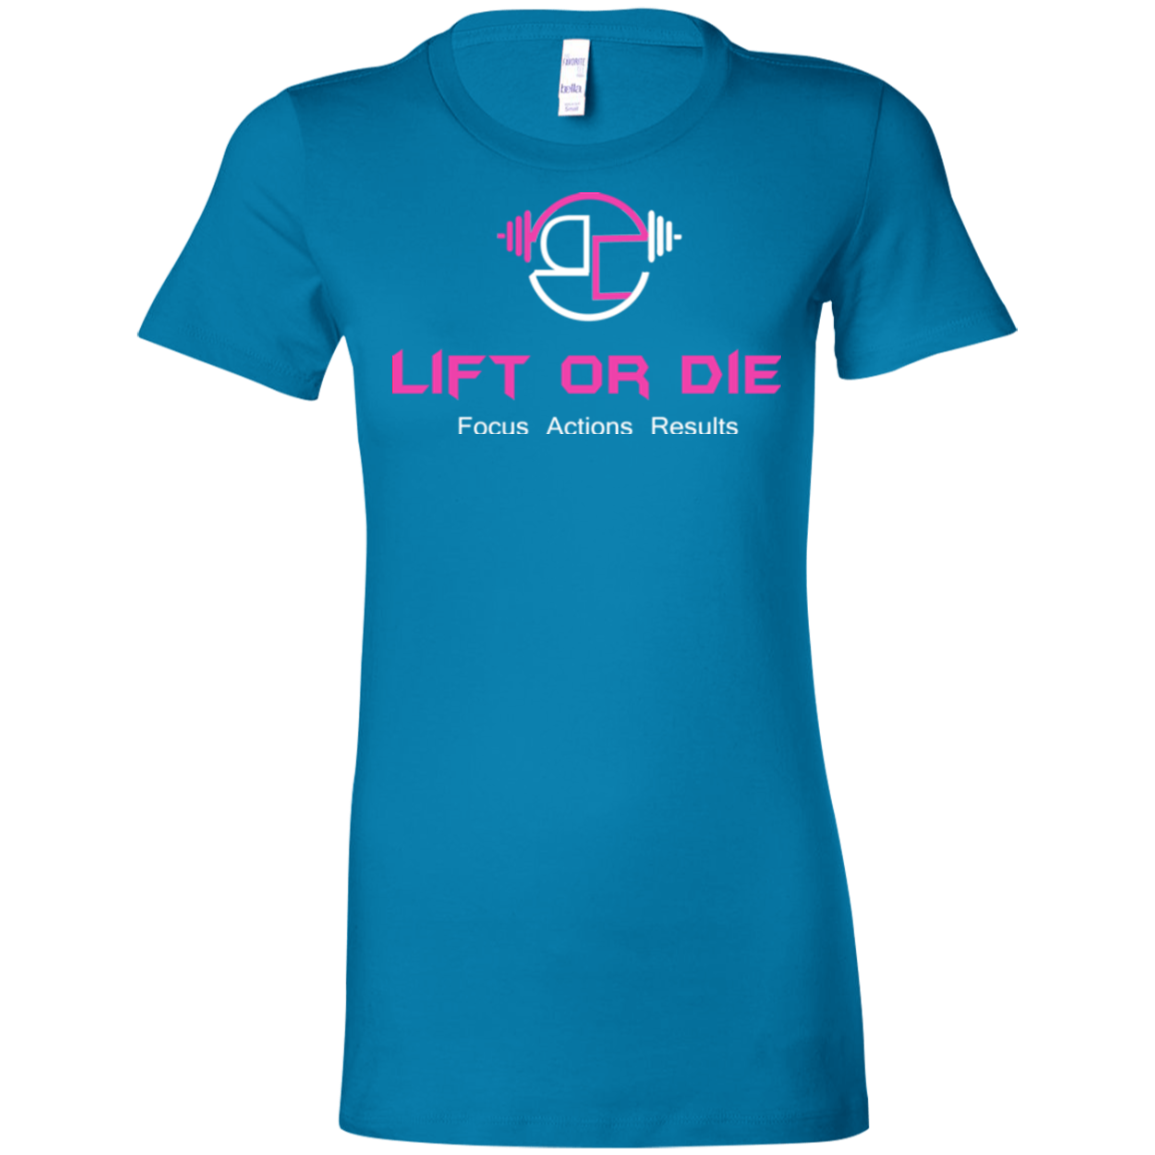 Lift or Die wht Ladies' Favorite T-Shirt